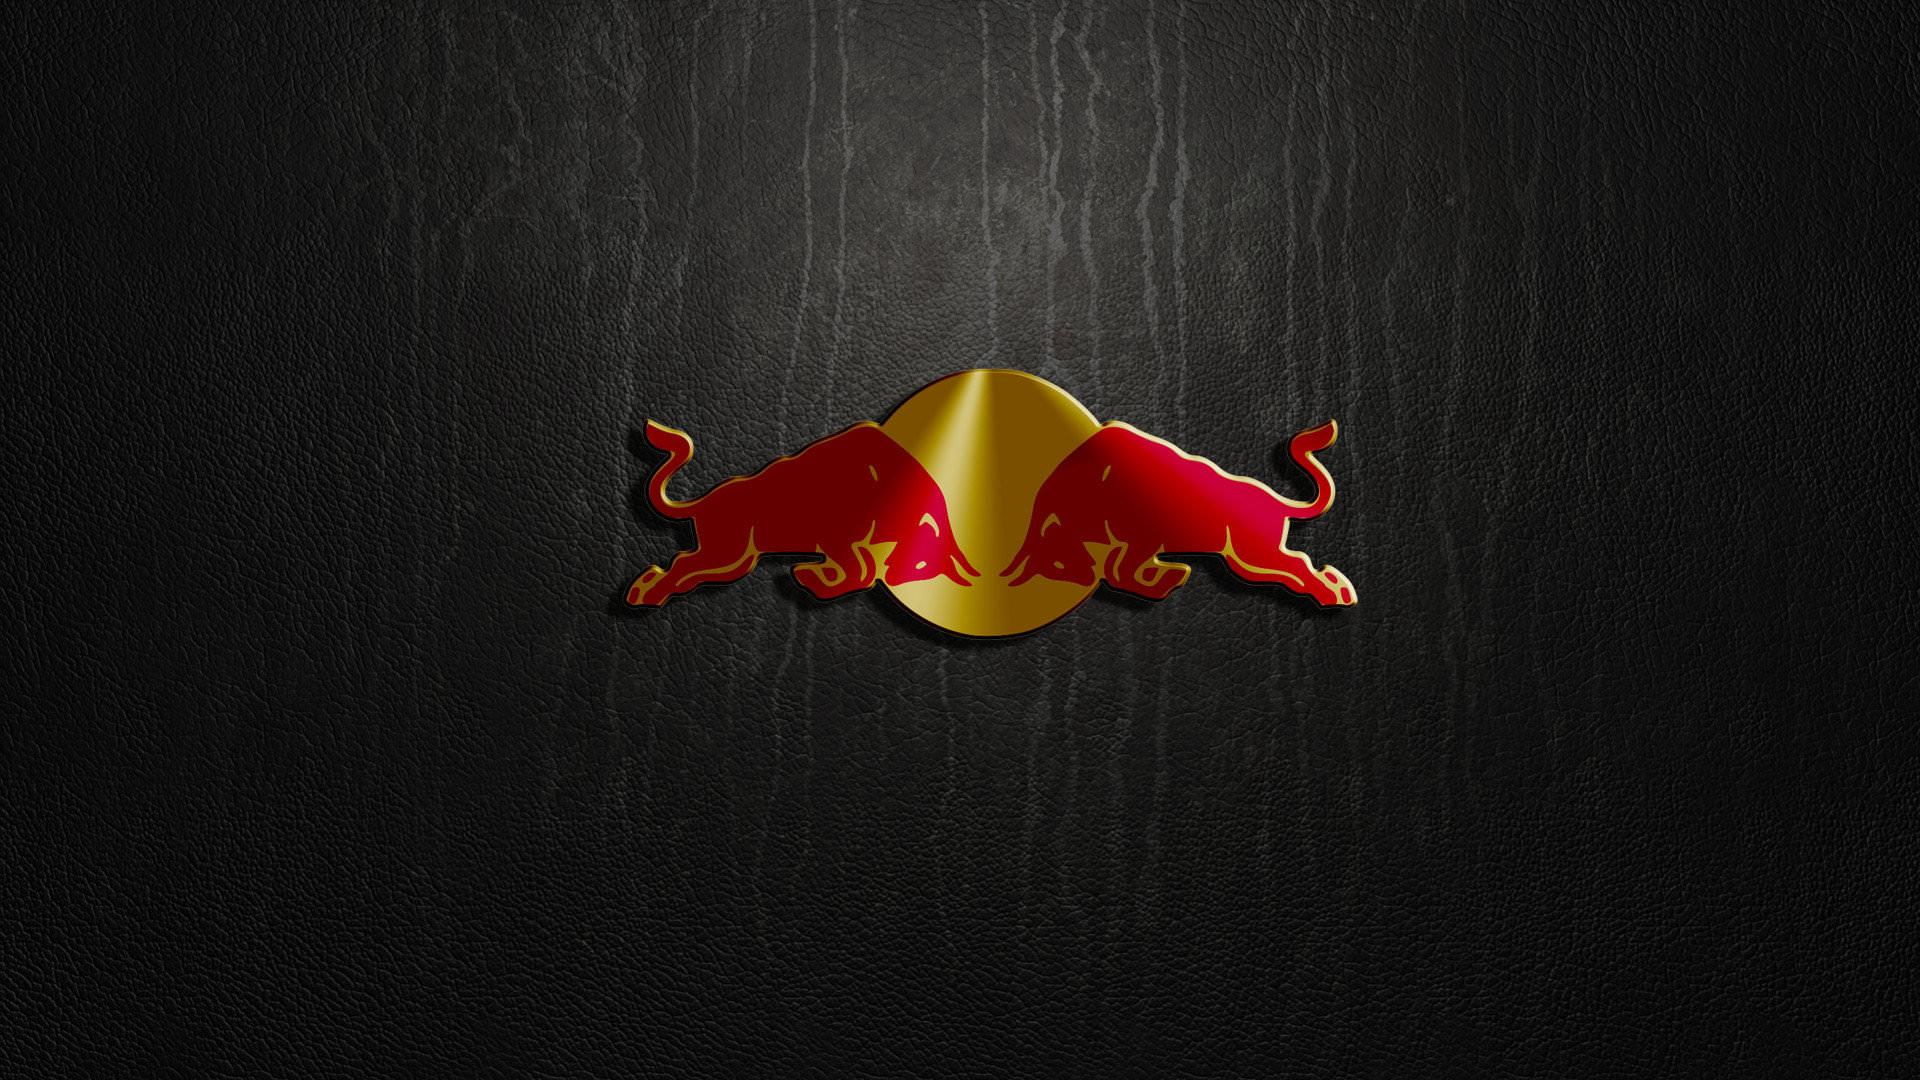 Red Bull wallpaper HD for desktop background